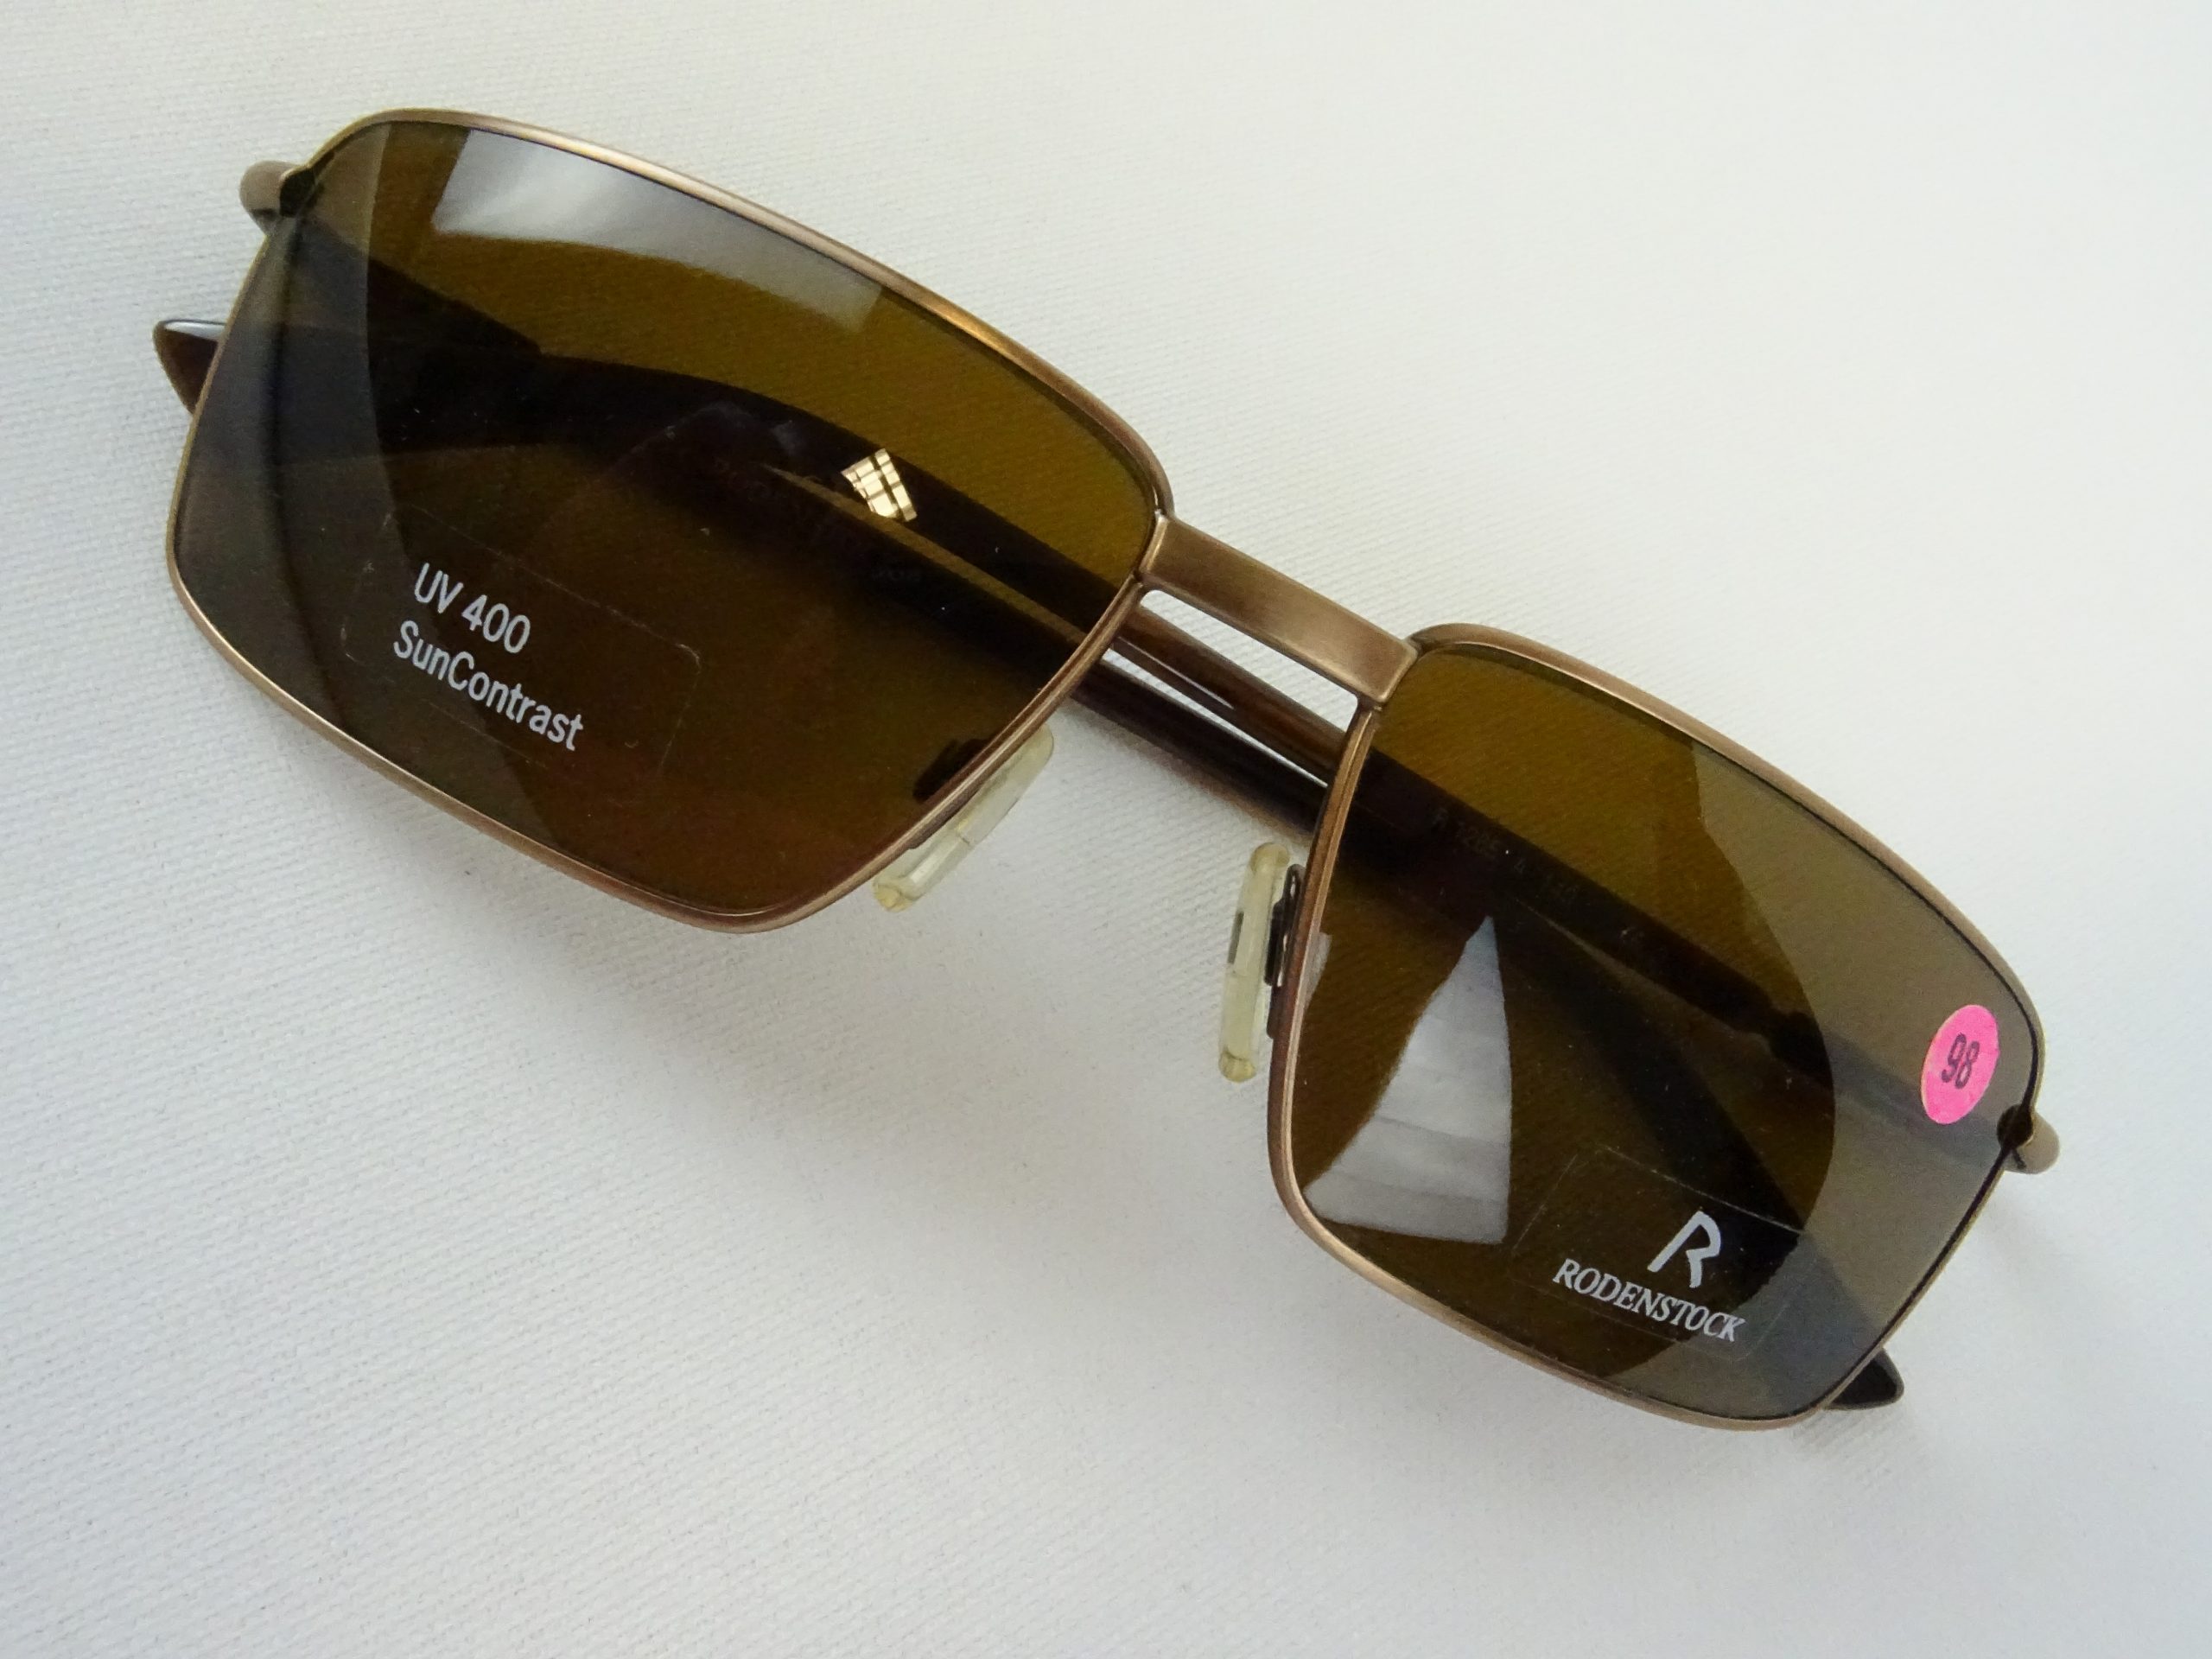 Gr. sportlich Herren M Contrast Brillen Gläser RODENSTOCK Metallfassung – 400 braun UV eckige Vintage Sonnenbrille Welt curved Form SUN